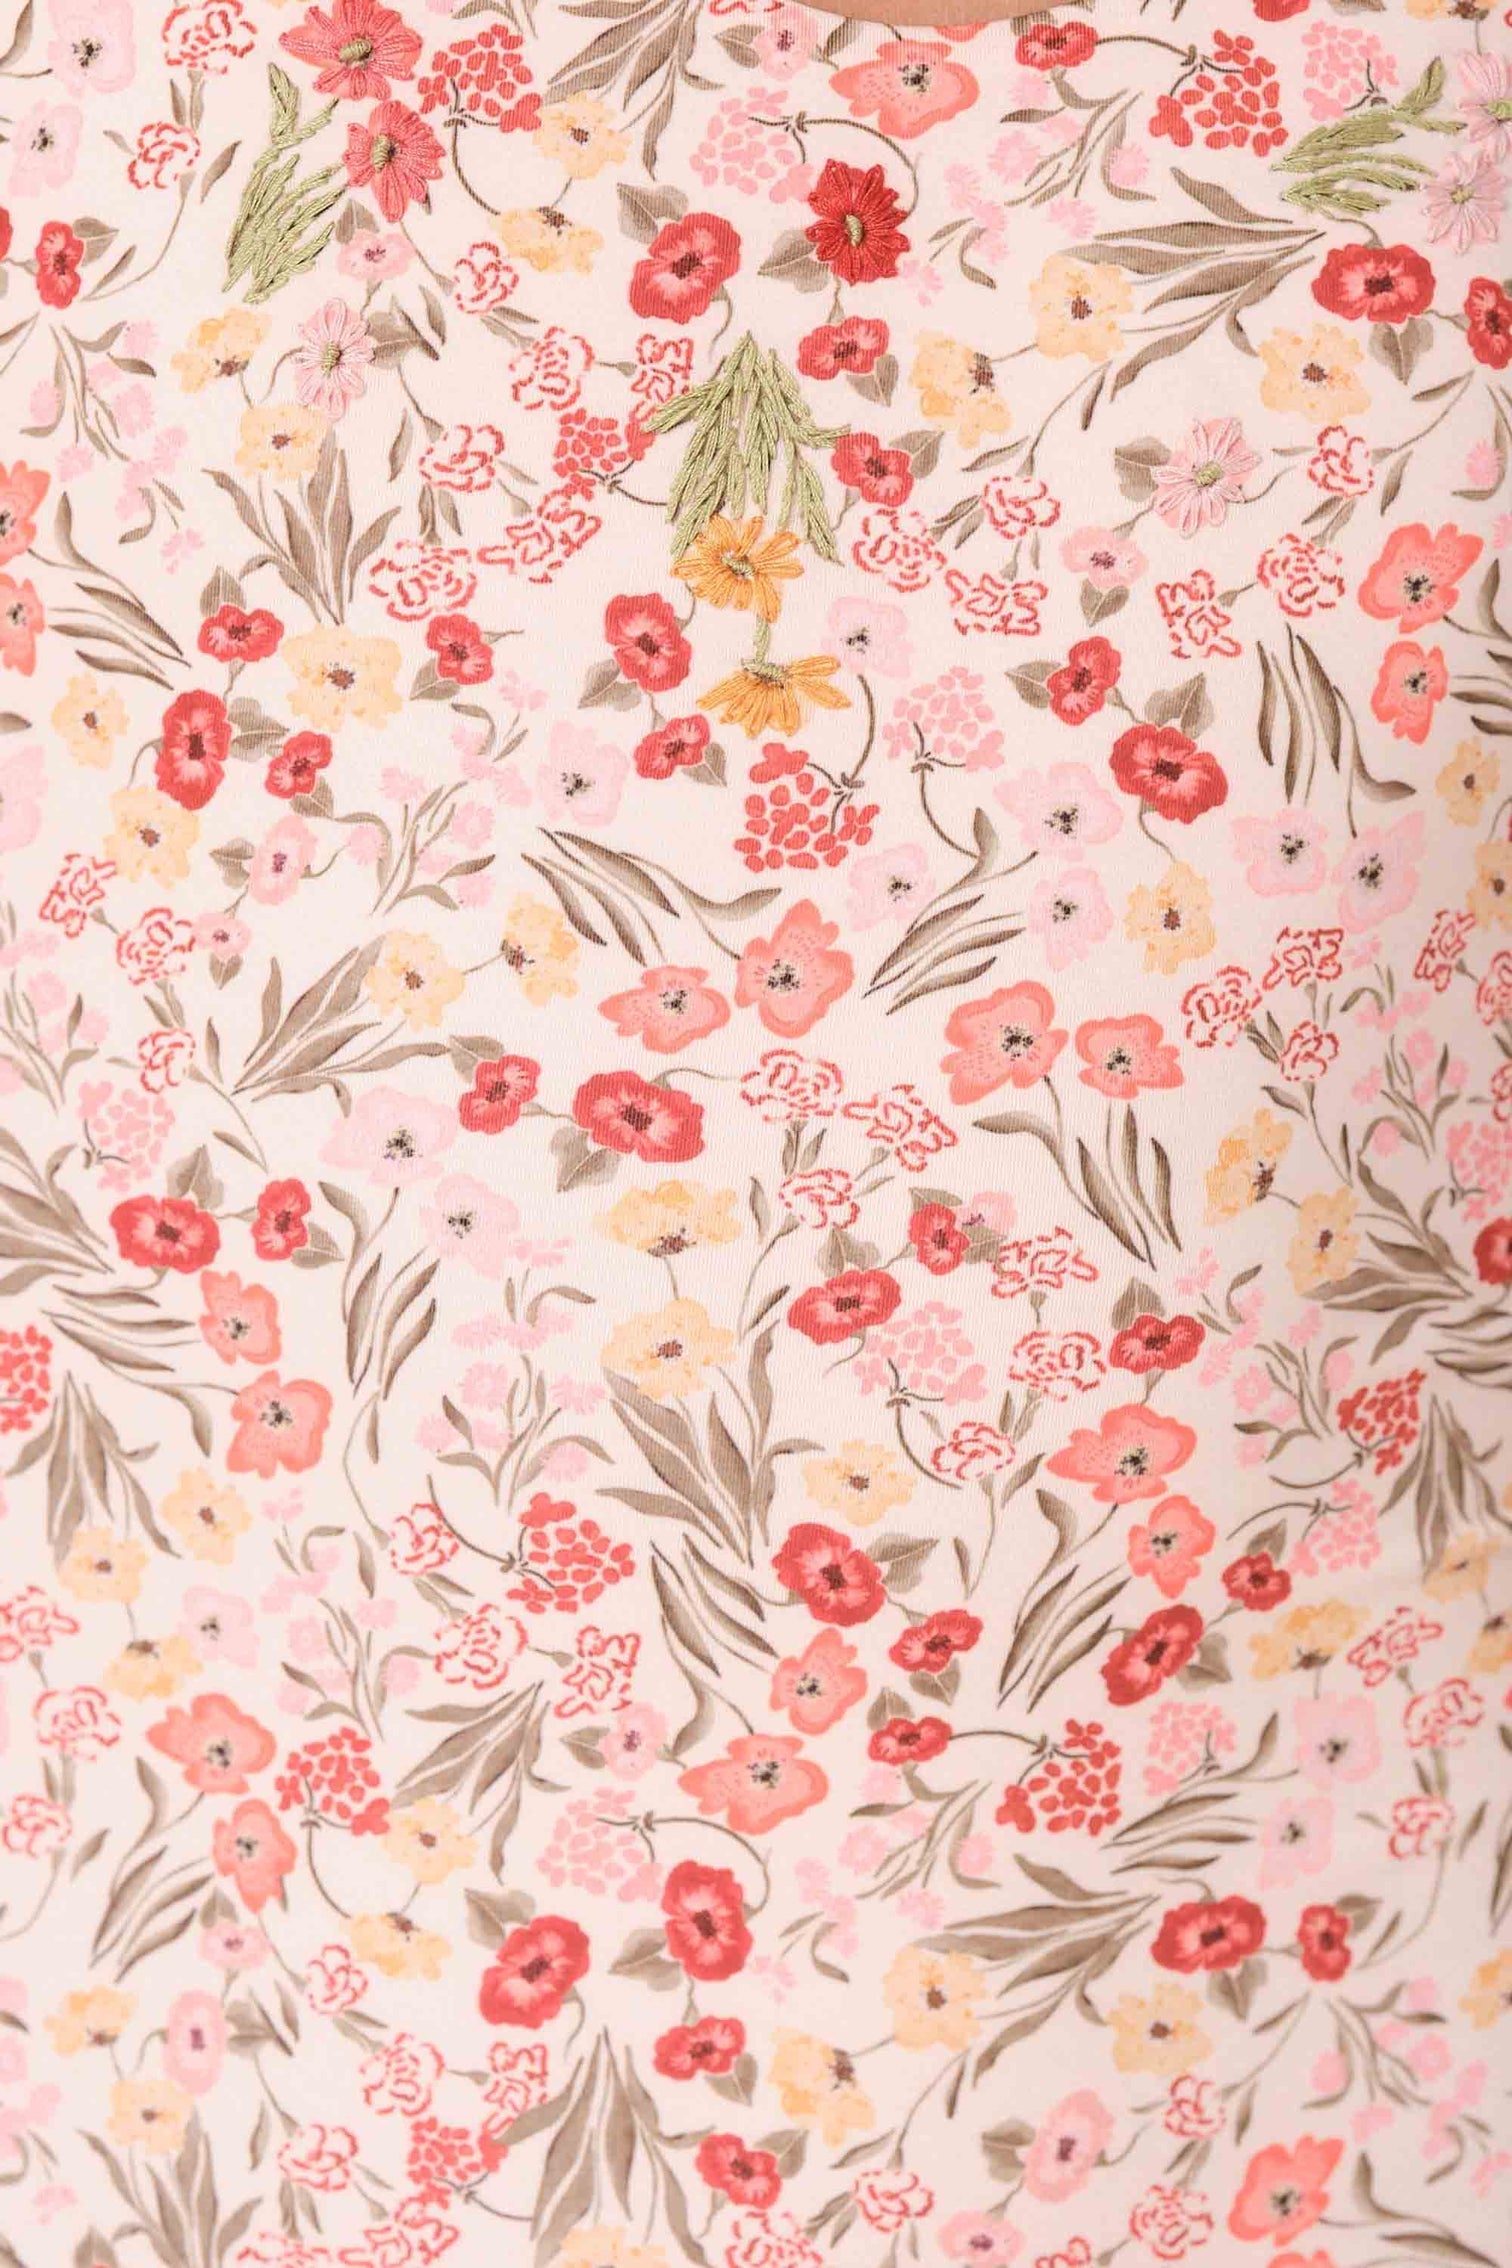 Detailed image of light pink floral design